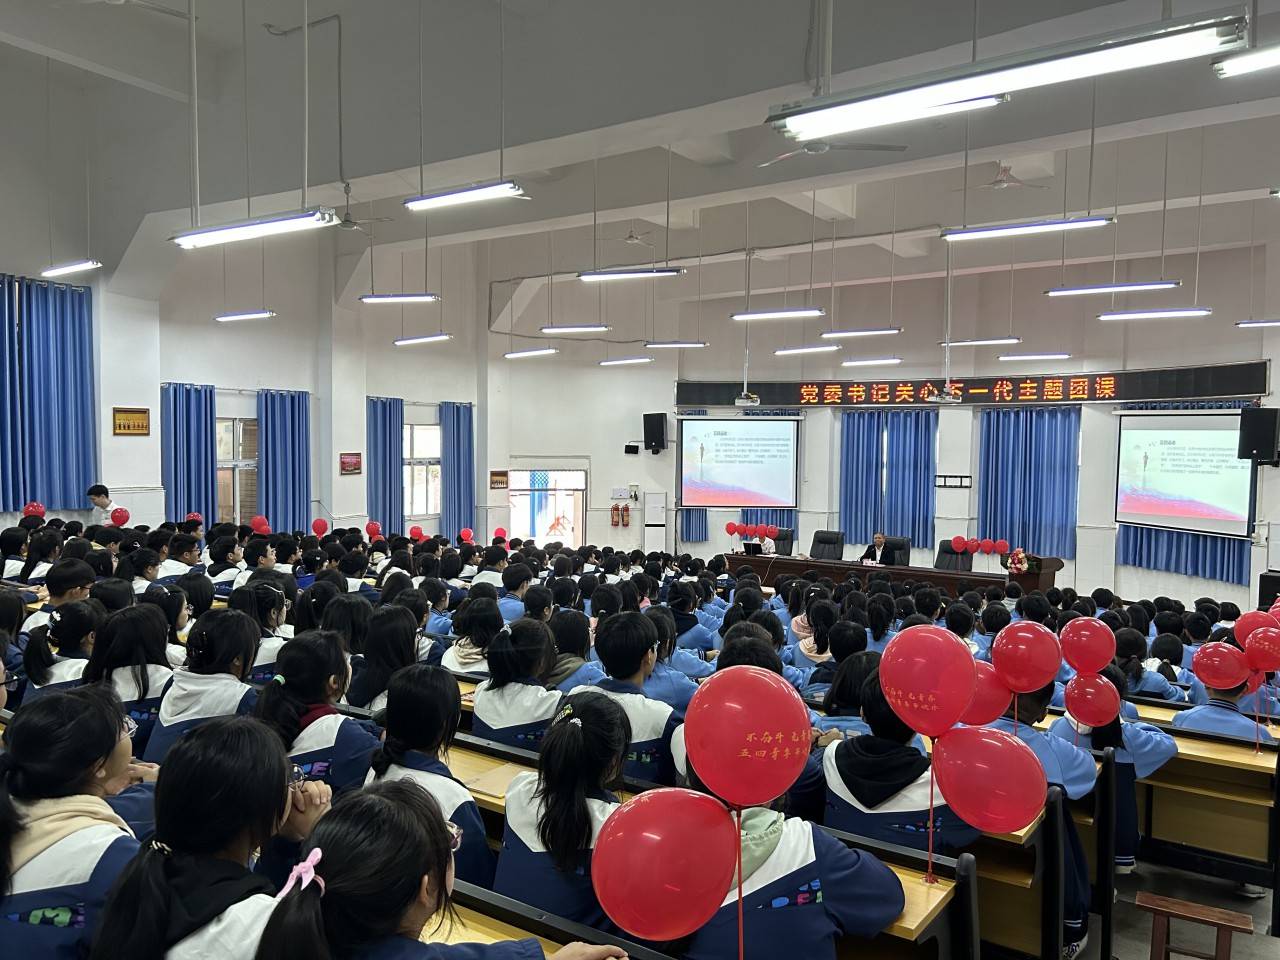 宣汉县第二中学校花图片